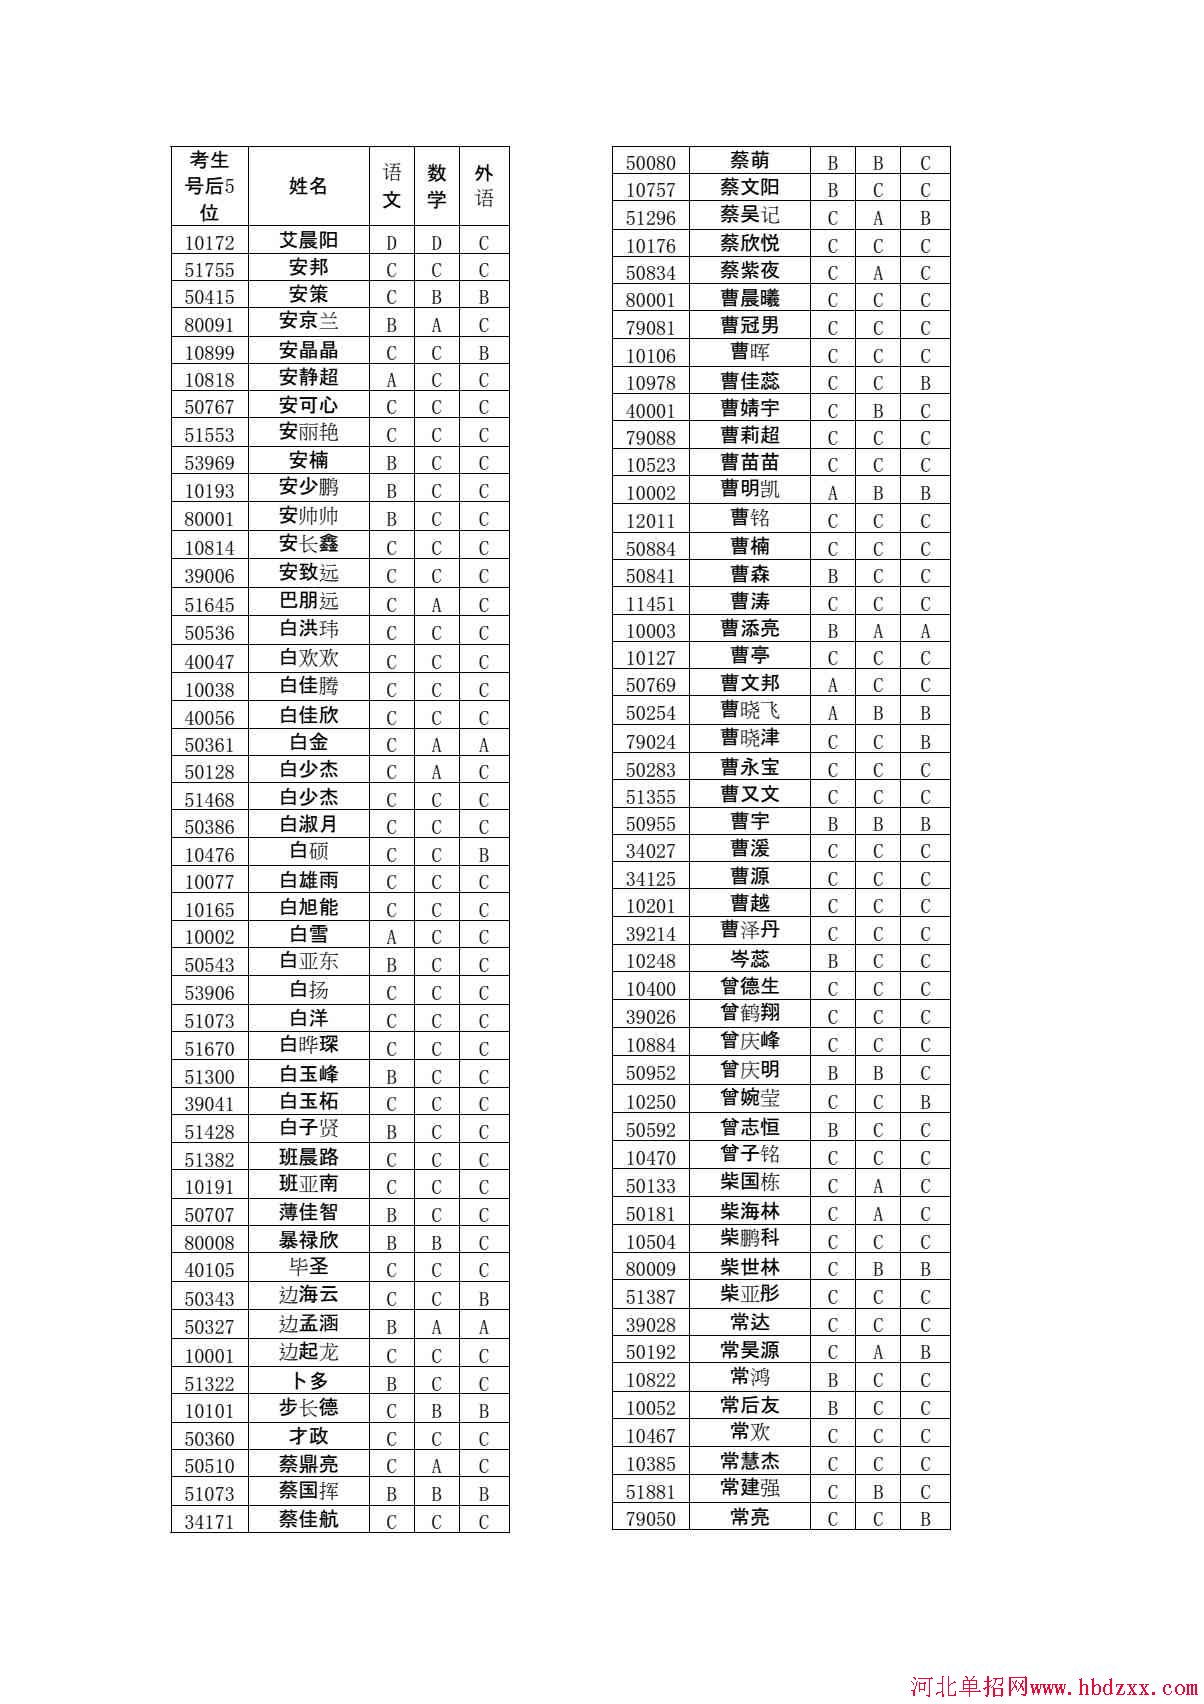 石家庄铁路职业技术学院2015年单独考试招生学问有免考资格考生名单